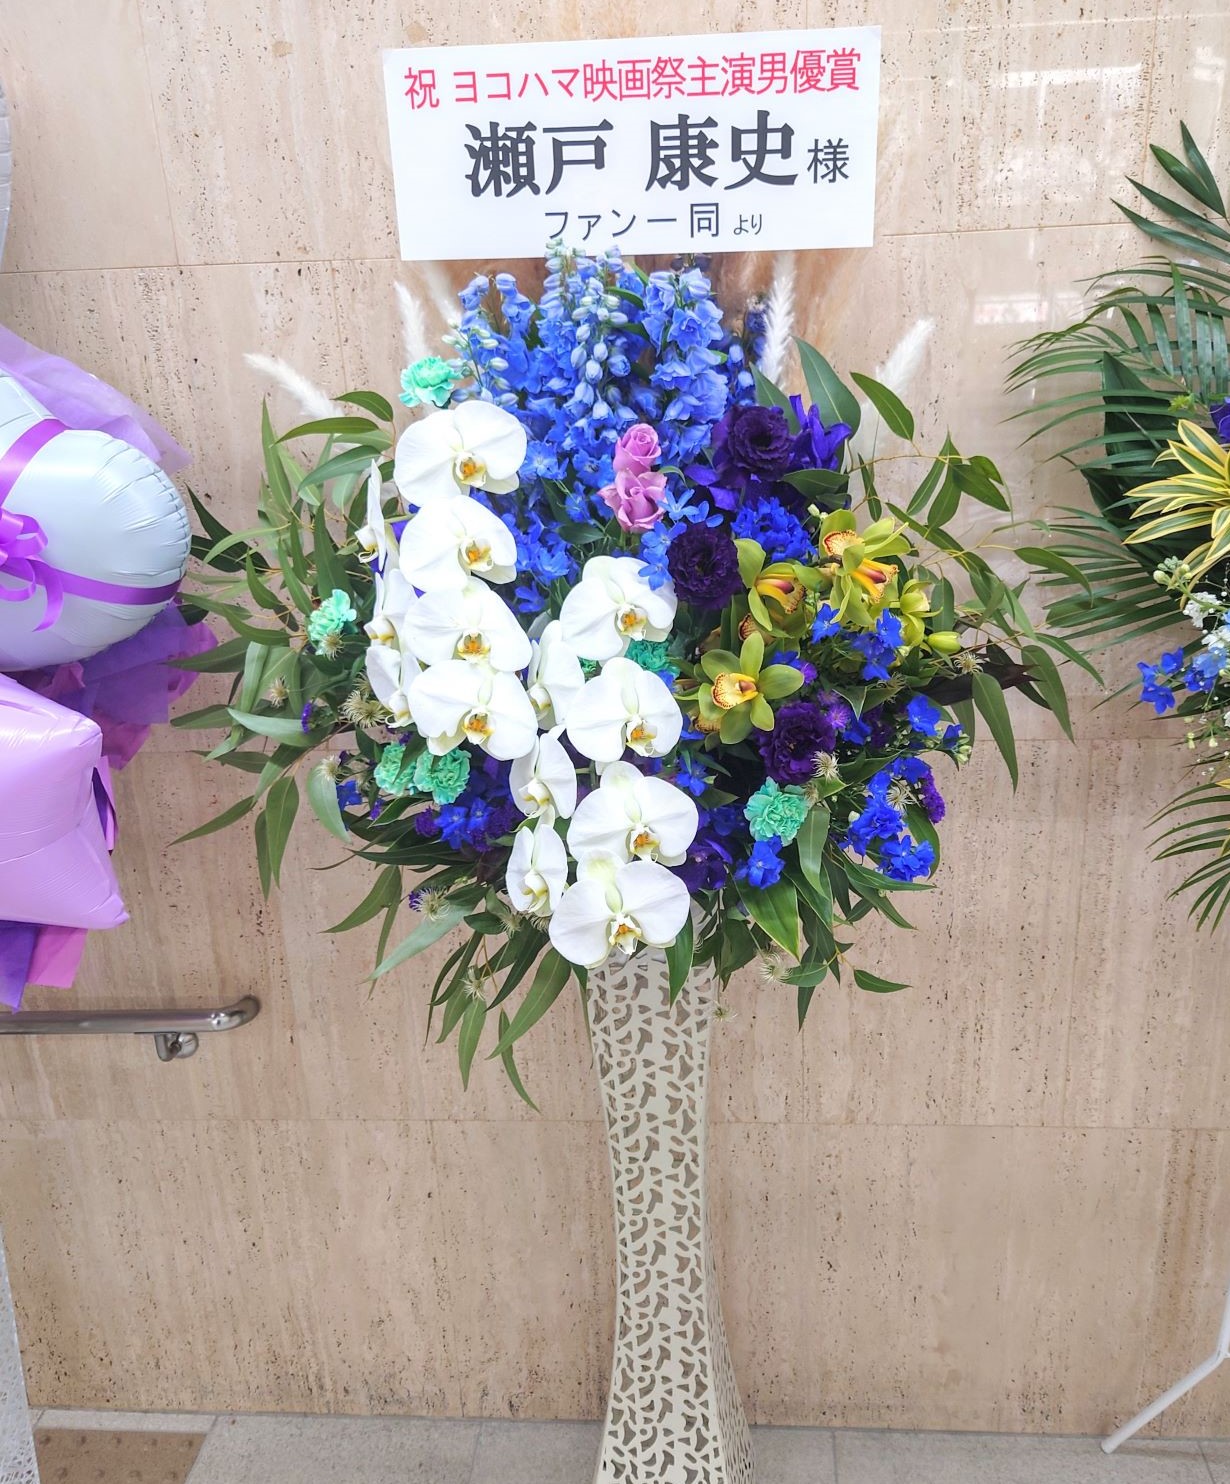 横浜映画祭へ受賞祝いの胡蝶蘭入りスタンド花を関内ホールへ配達しました。【横浜花屋の花束・スタンド花・胡蝶蘭・バルーン・アレンジメント配達事例1105】